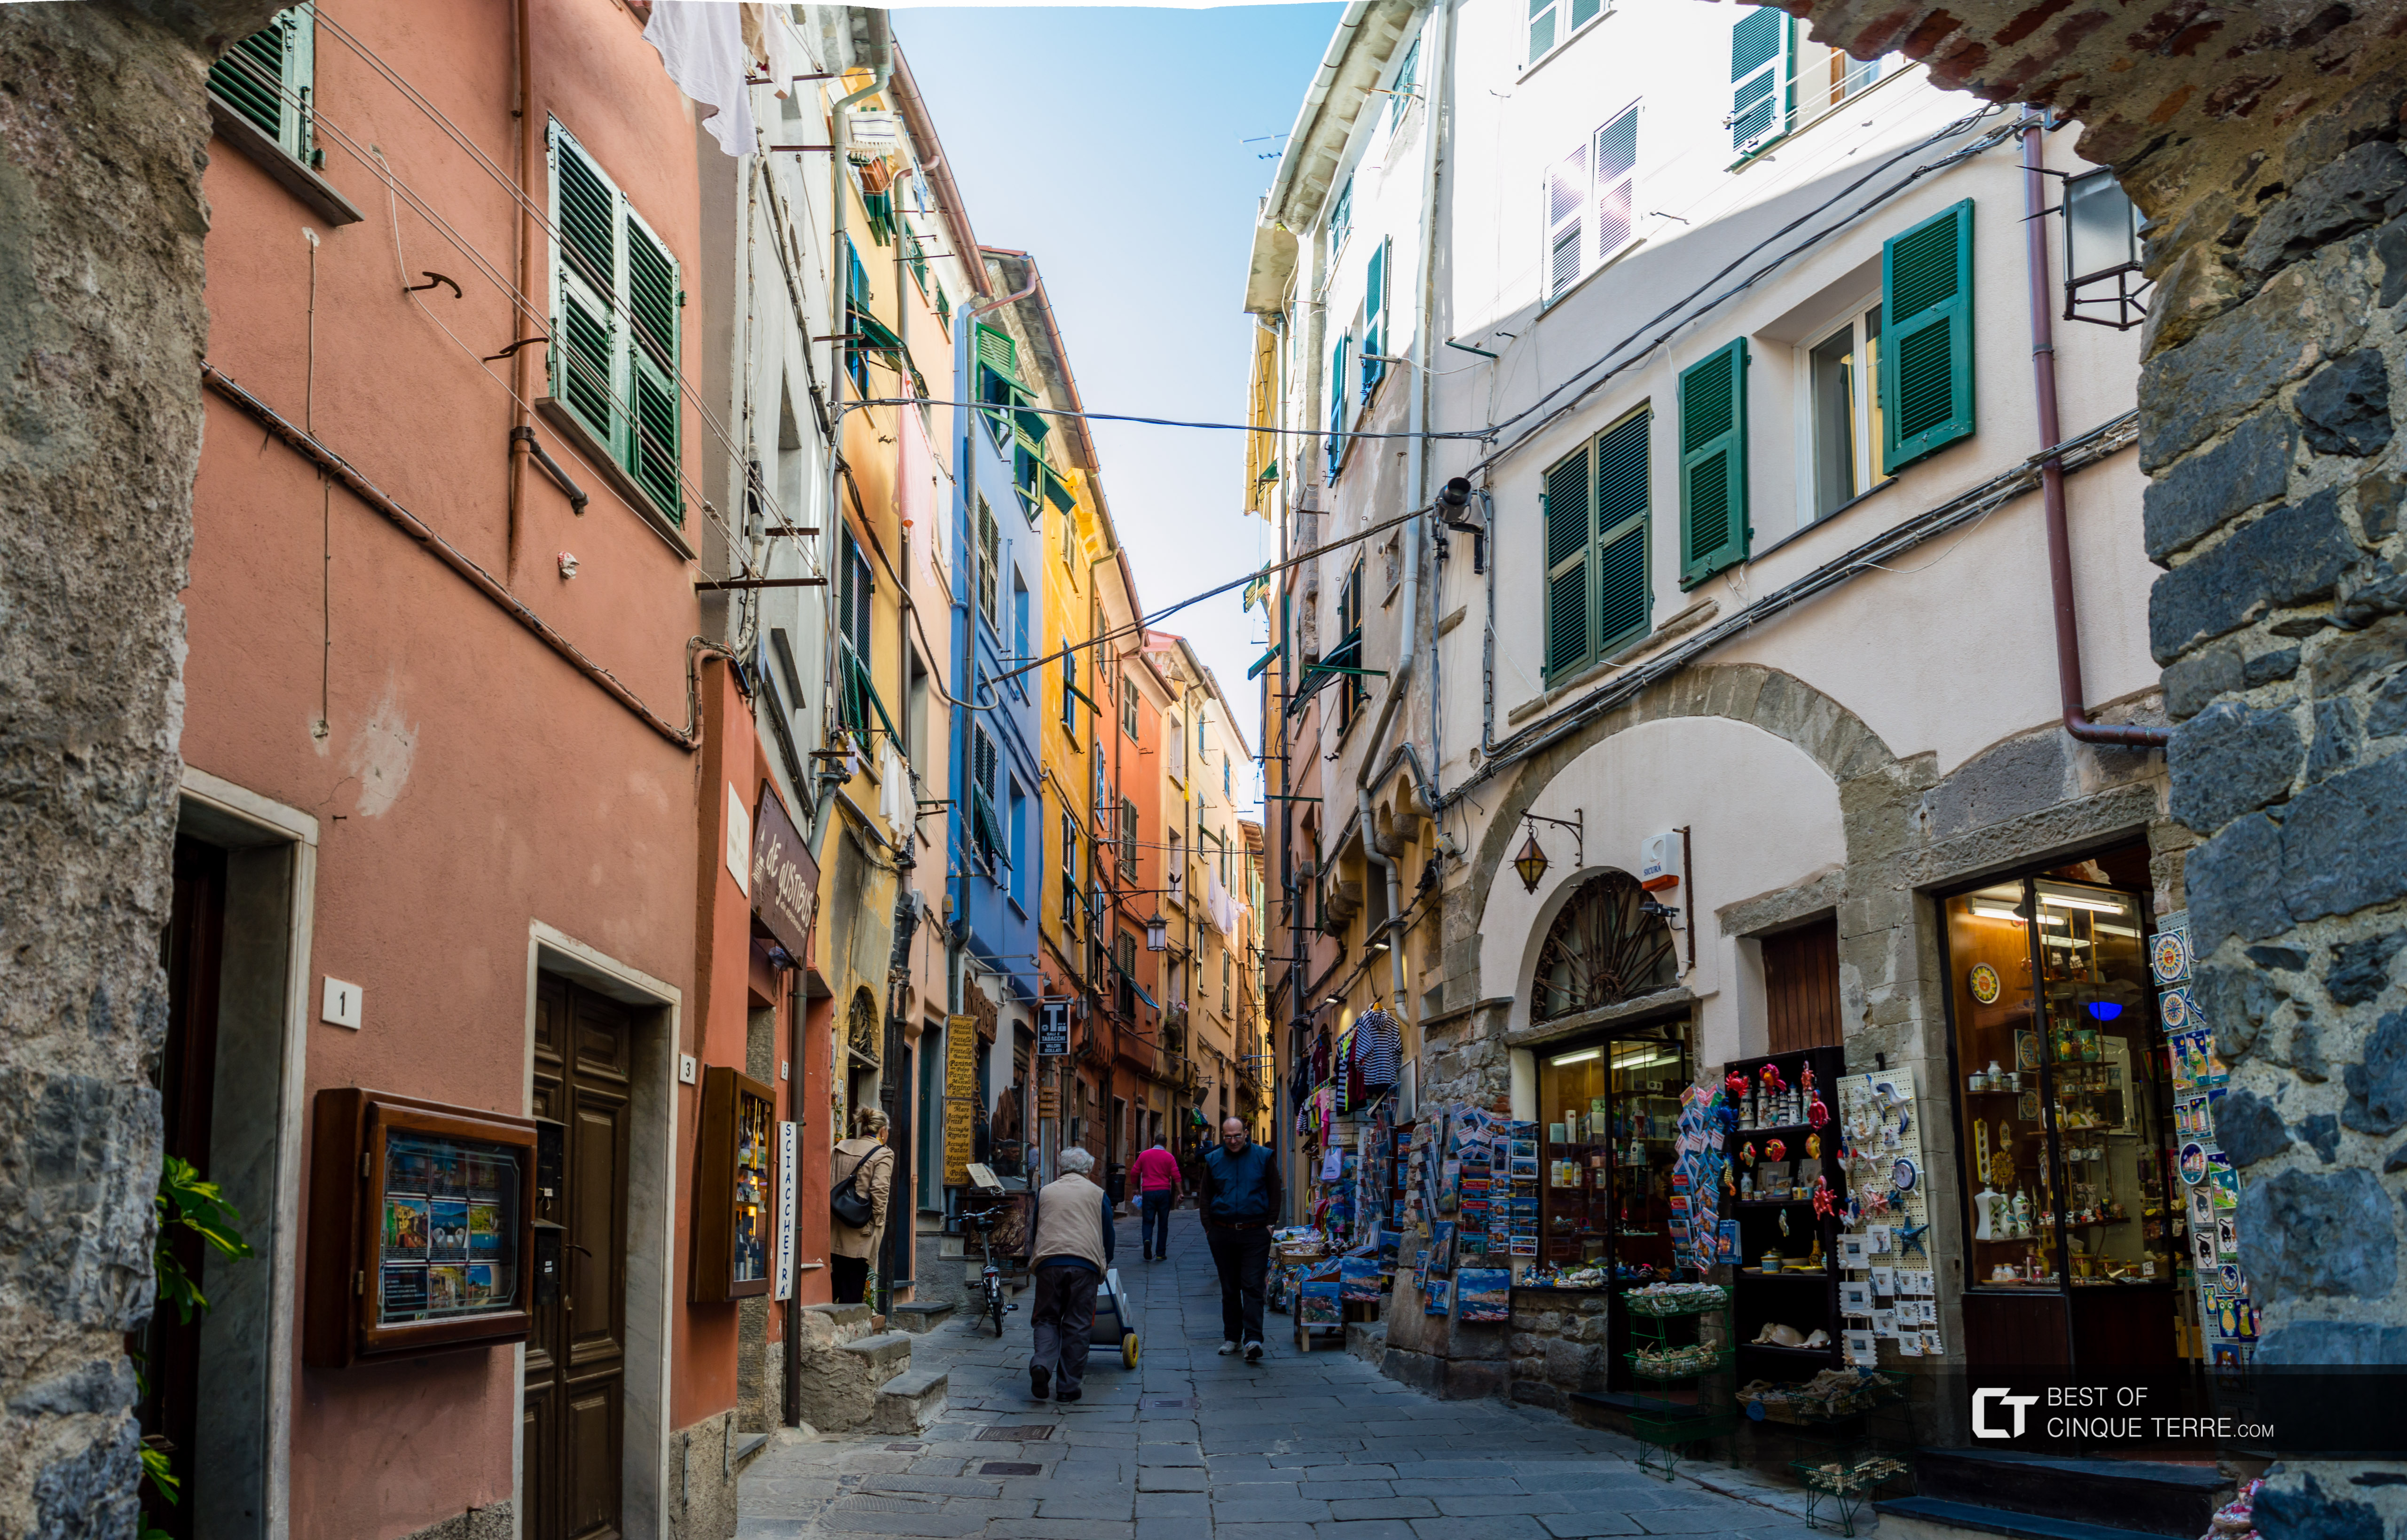 La calle principal, Portovenere, Italia